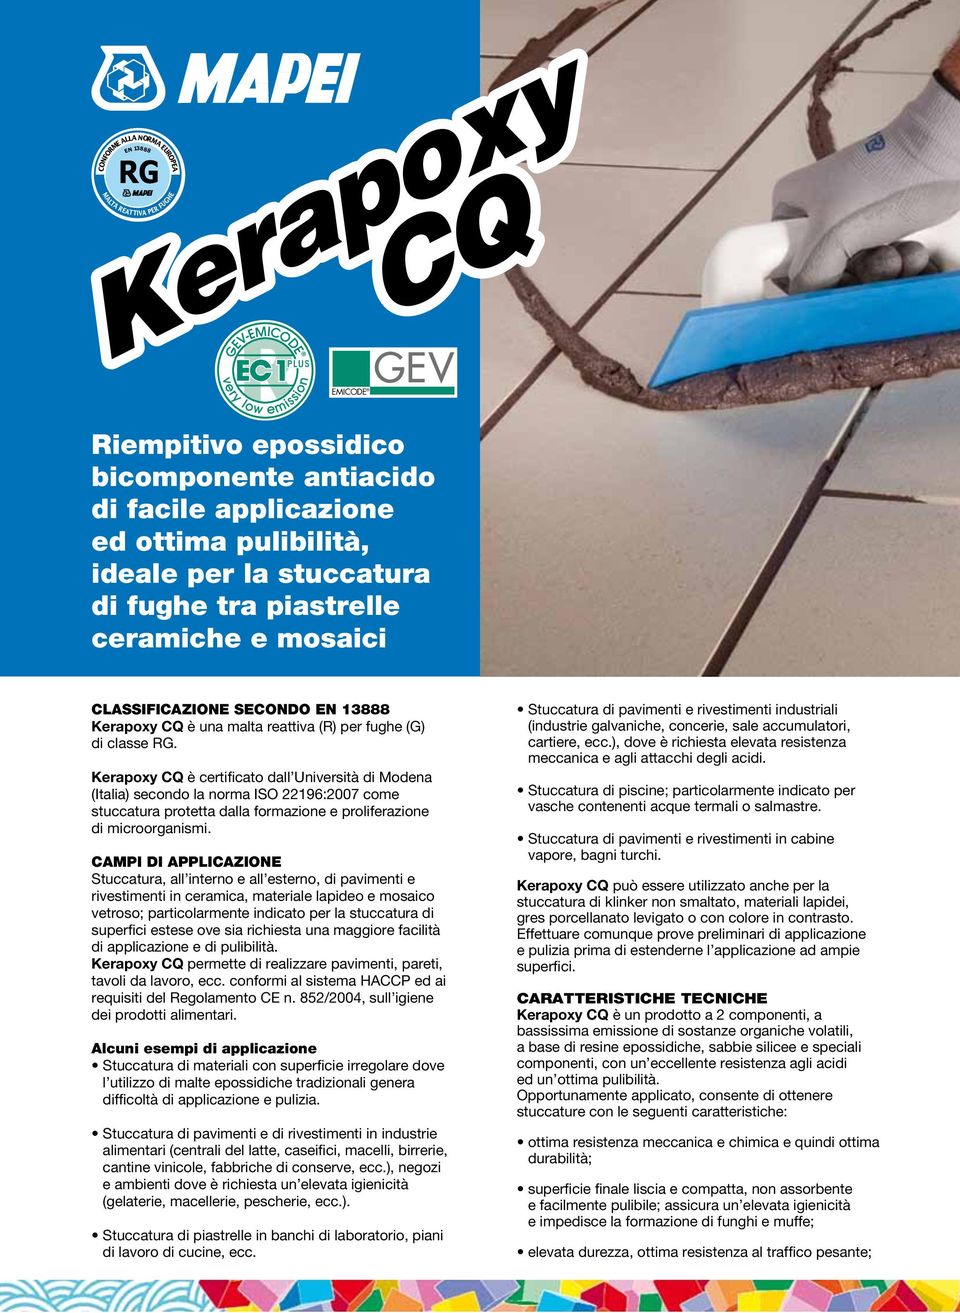 Kerapoxy CQ è certificato dall Università di Modena (Italia) secondo la norma ISO 22196:2007 come stuccatura protetta dalla formazione e proliferazione di microorganismi.